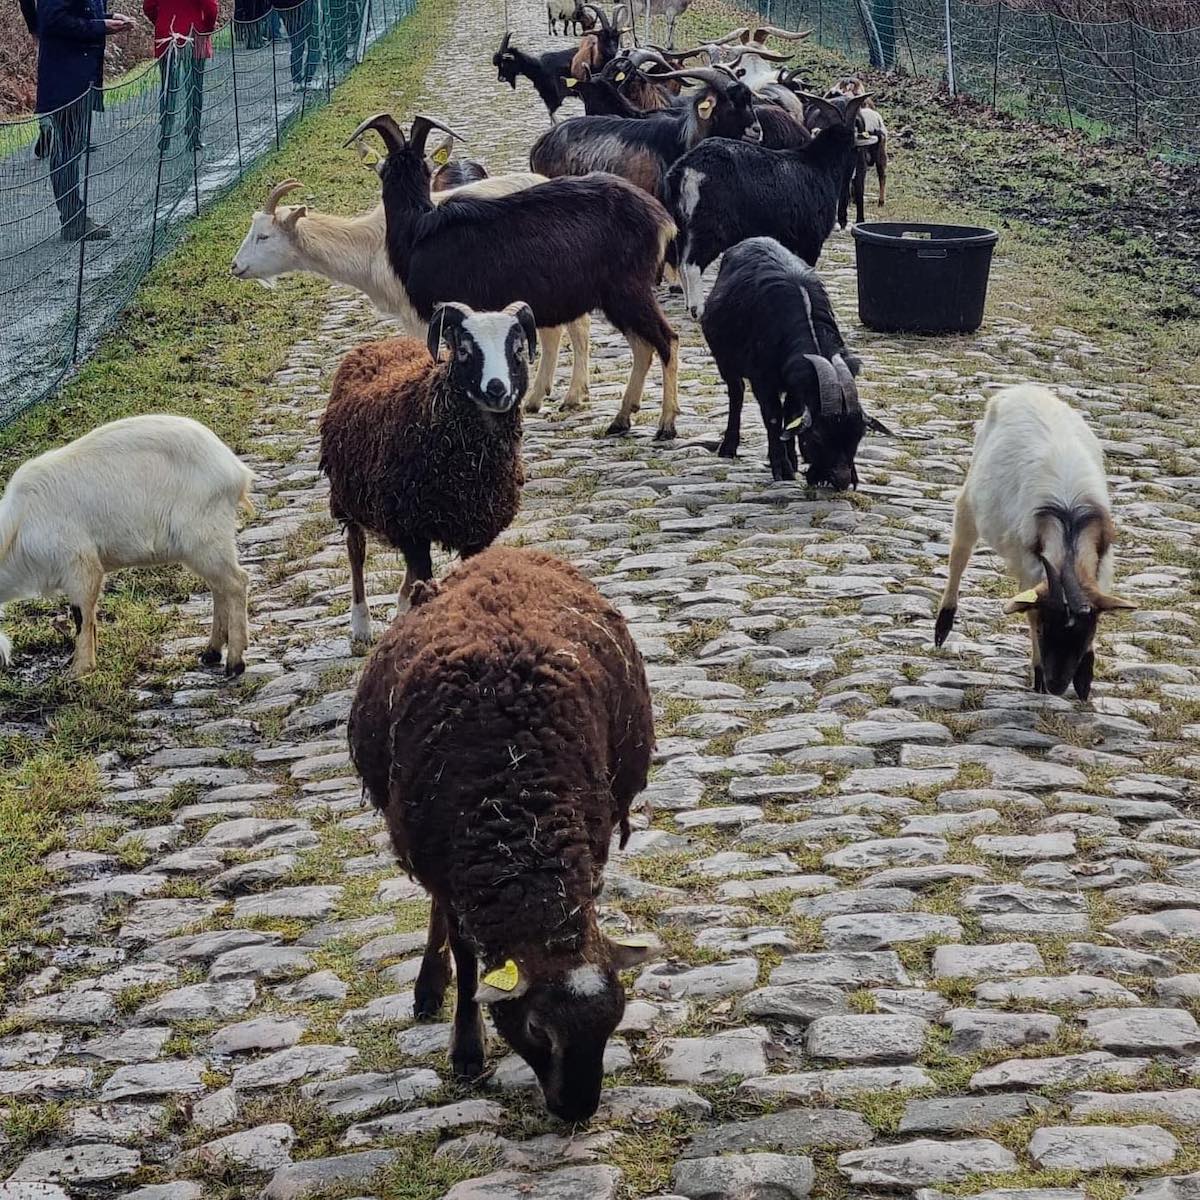 ad Arenberg "lavorano" capre e pecore